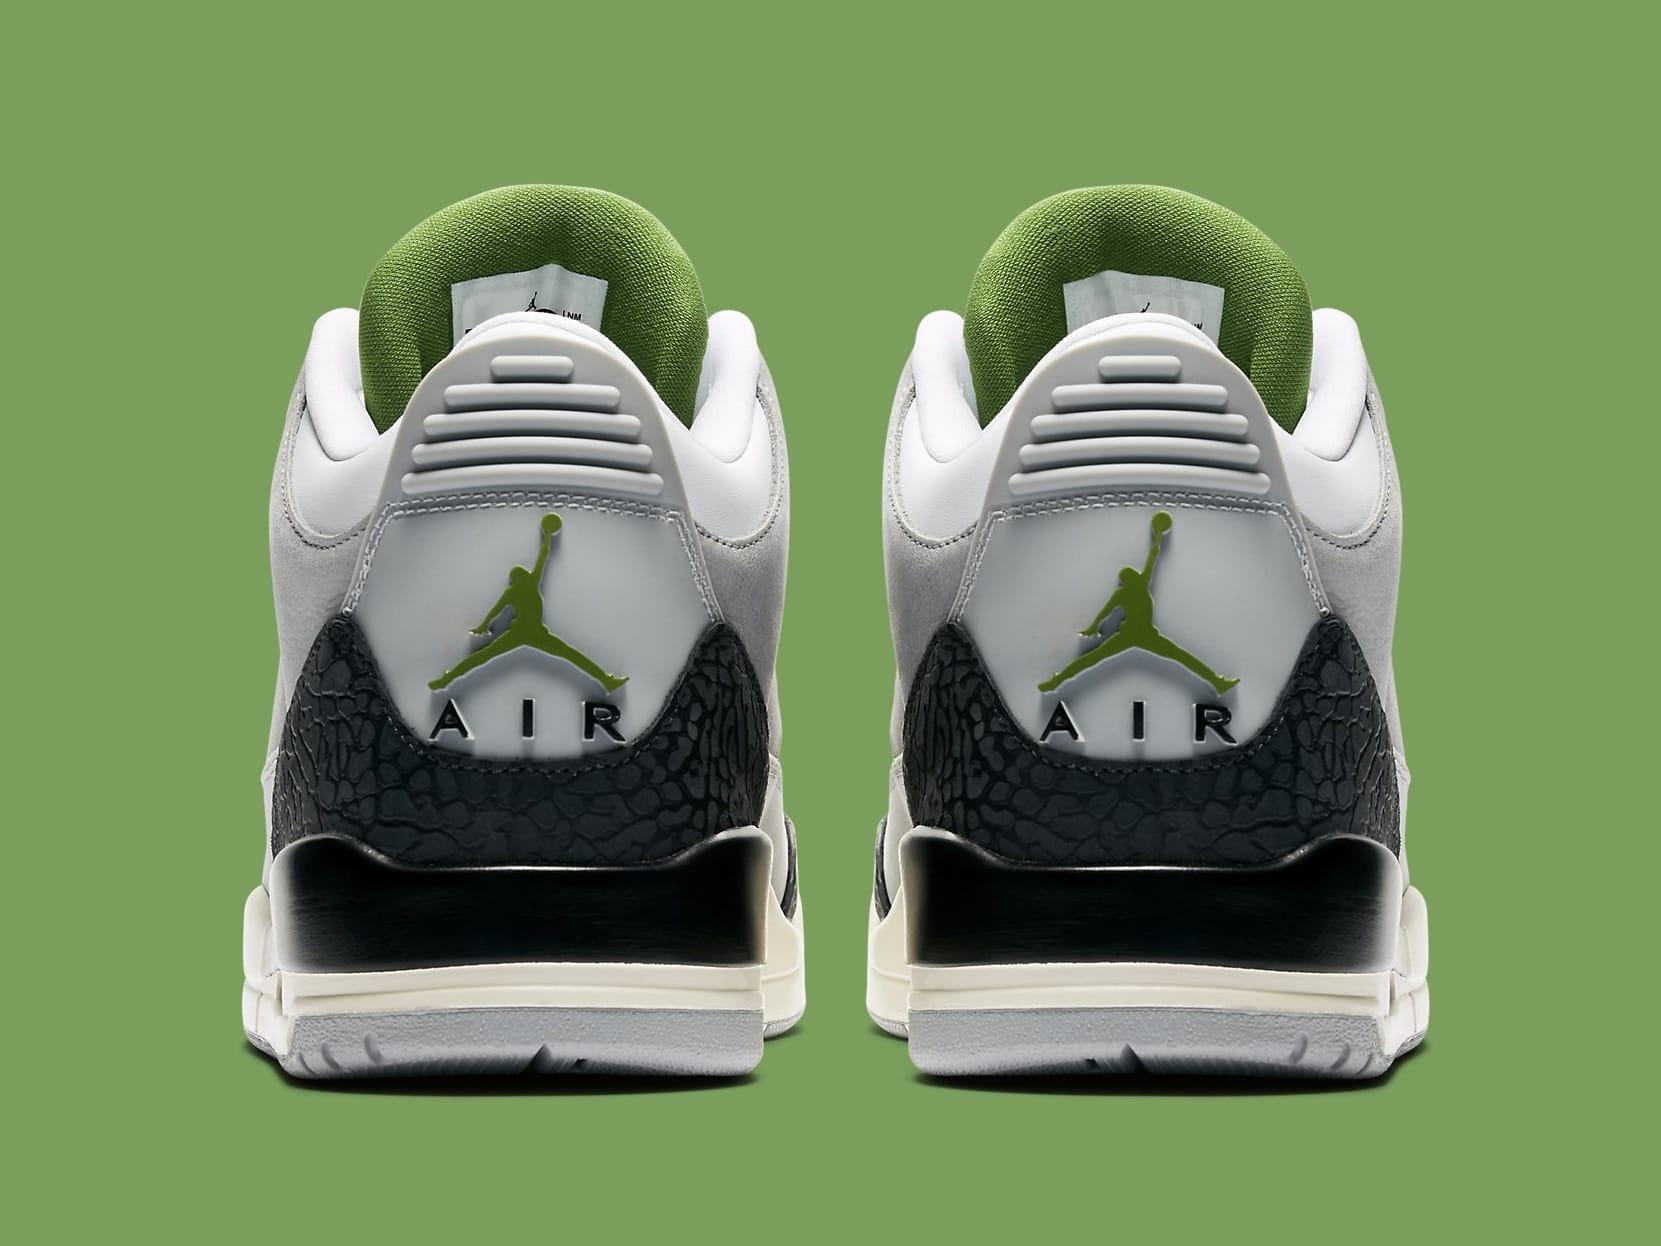 Air Jordan 3 III Chlorophyll Tinker Release Date 136064-006 Heel